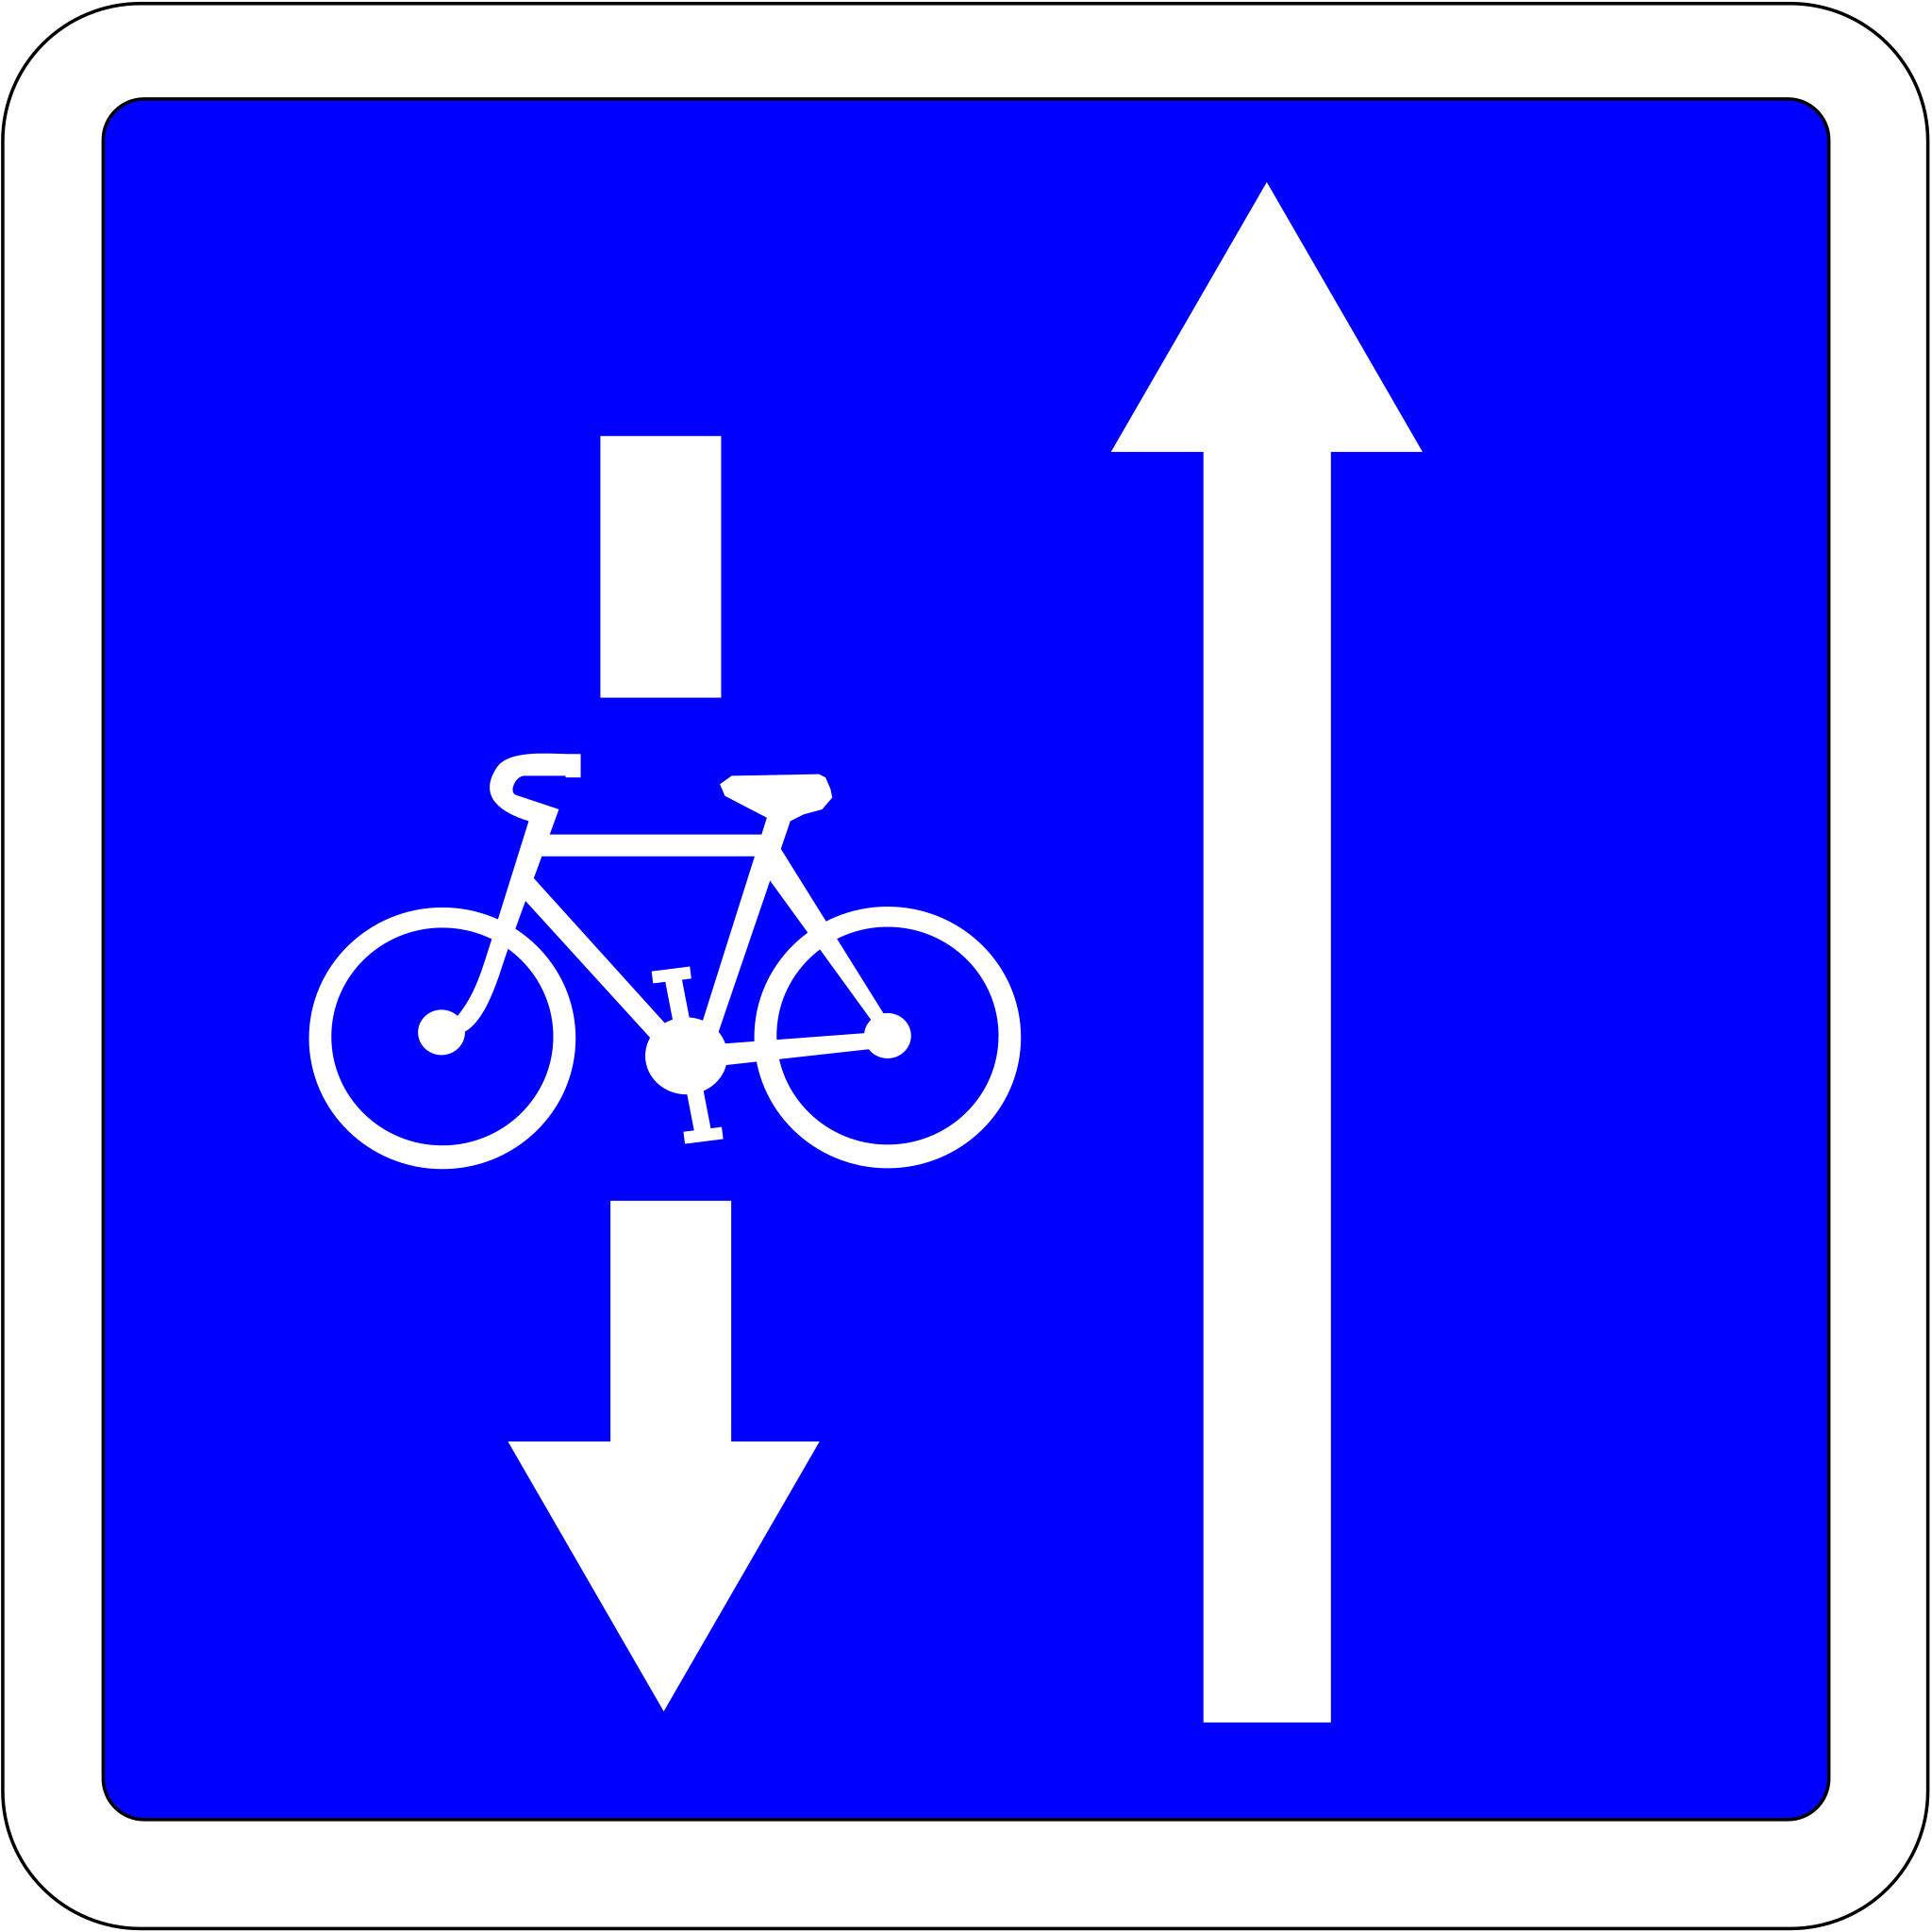 Panneau carré sur fond bleu avec une flèche blanche verticale avec un vélo qui descend et une flèche blanche simple qui monte.